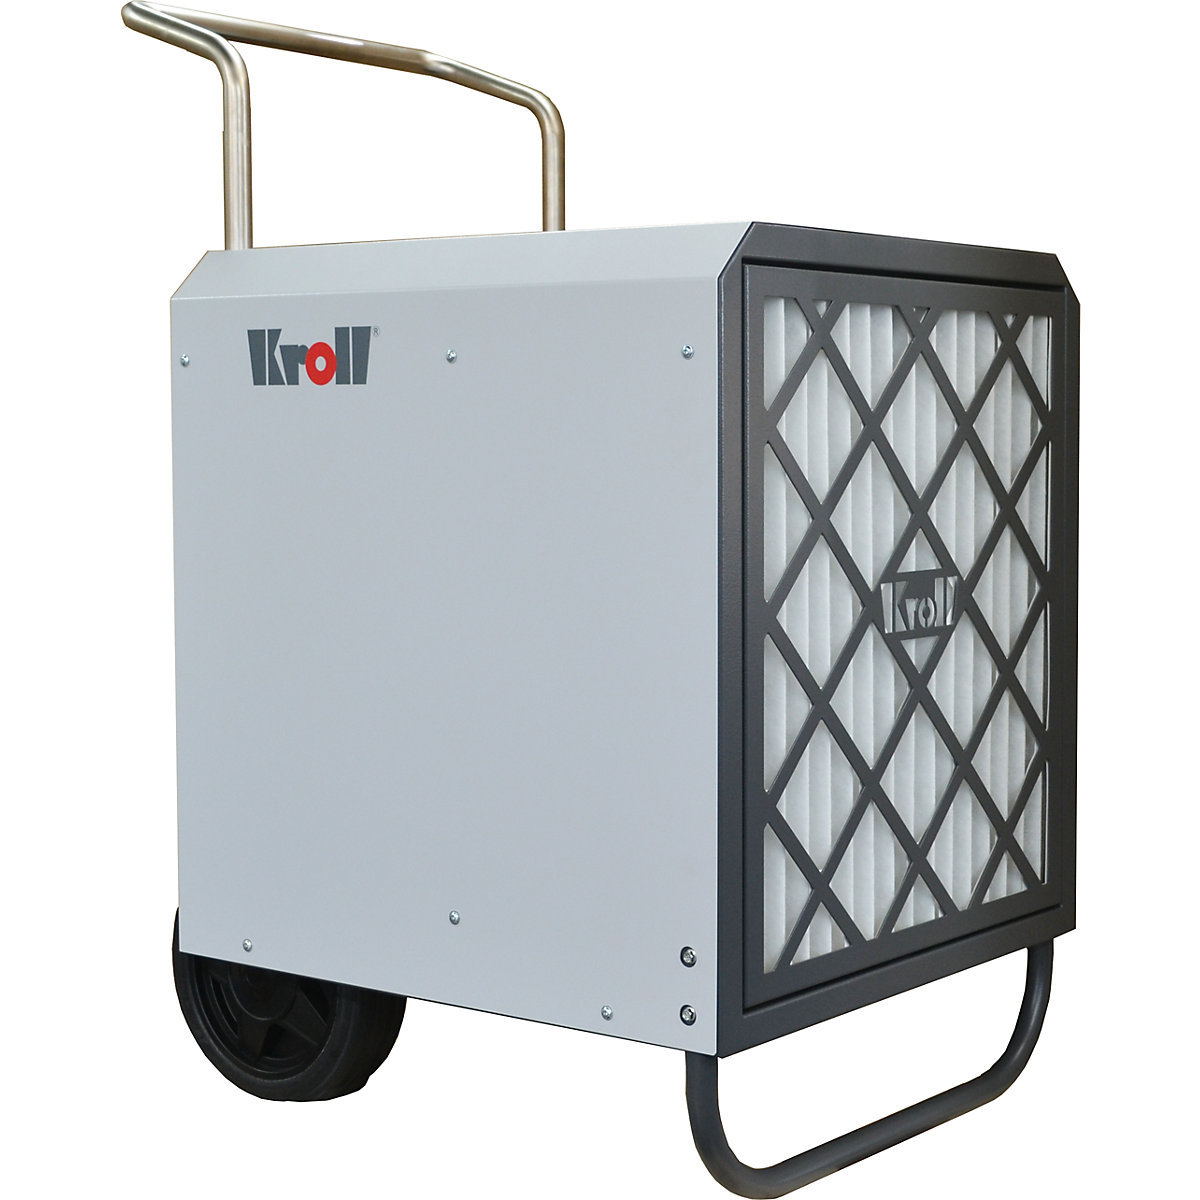 Uređaj za pročišćavanje zraka – Kroll (Prikaz proizvoda 5)-4